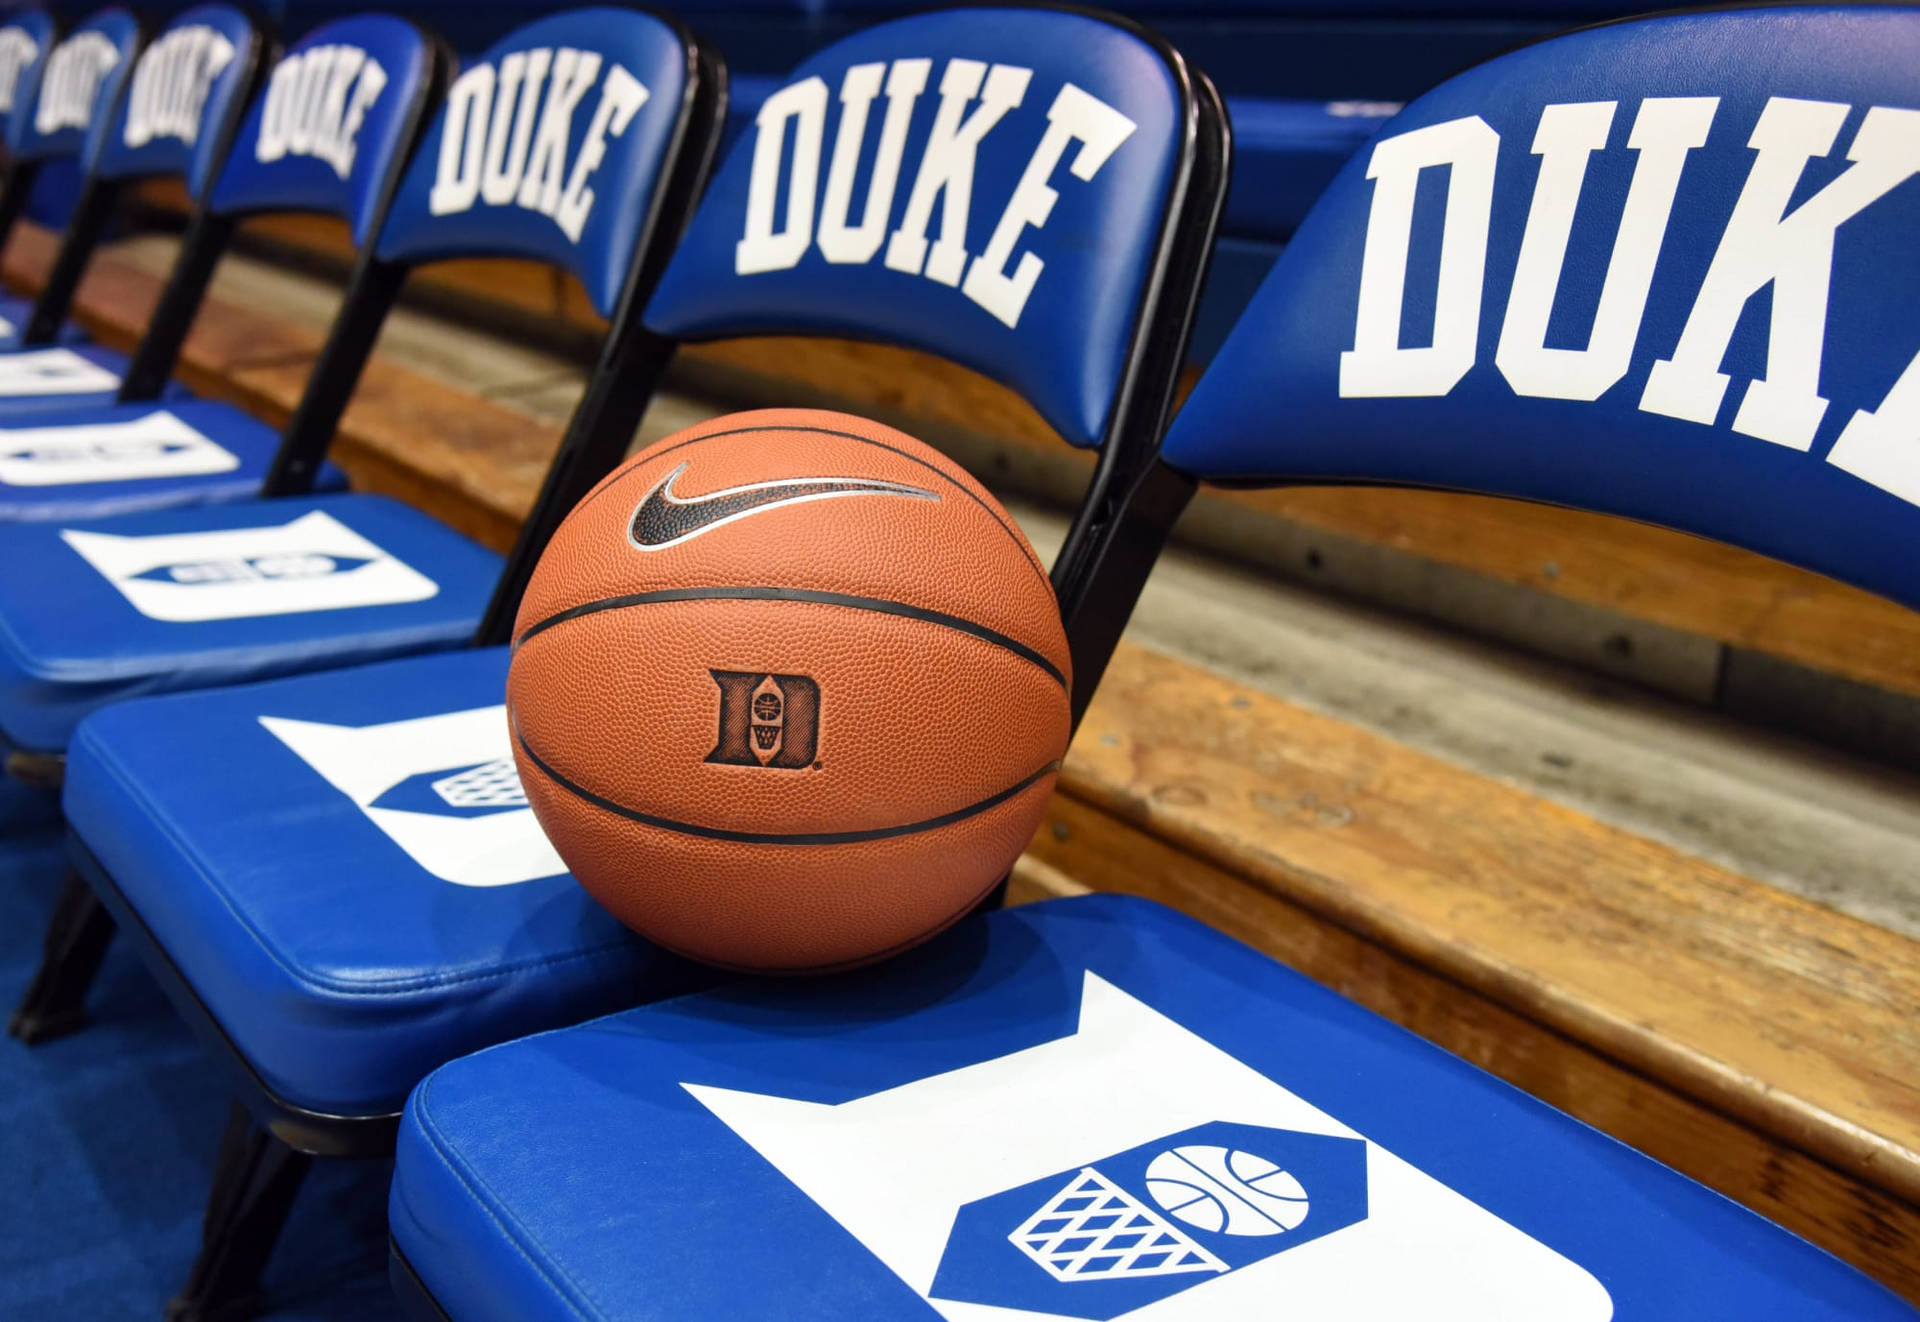 Duke Blue Devils Nike Basketball Background